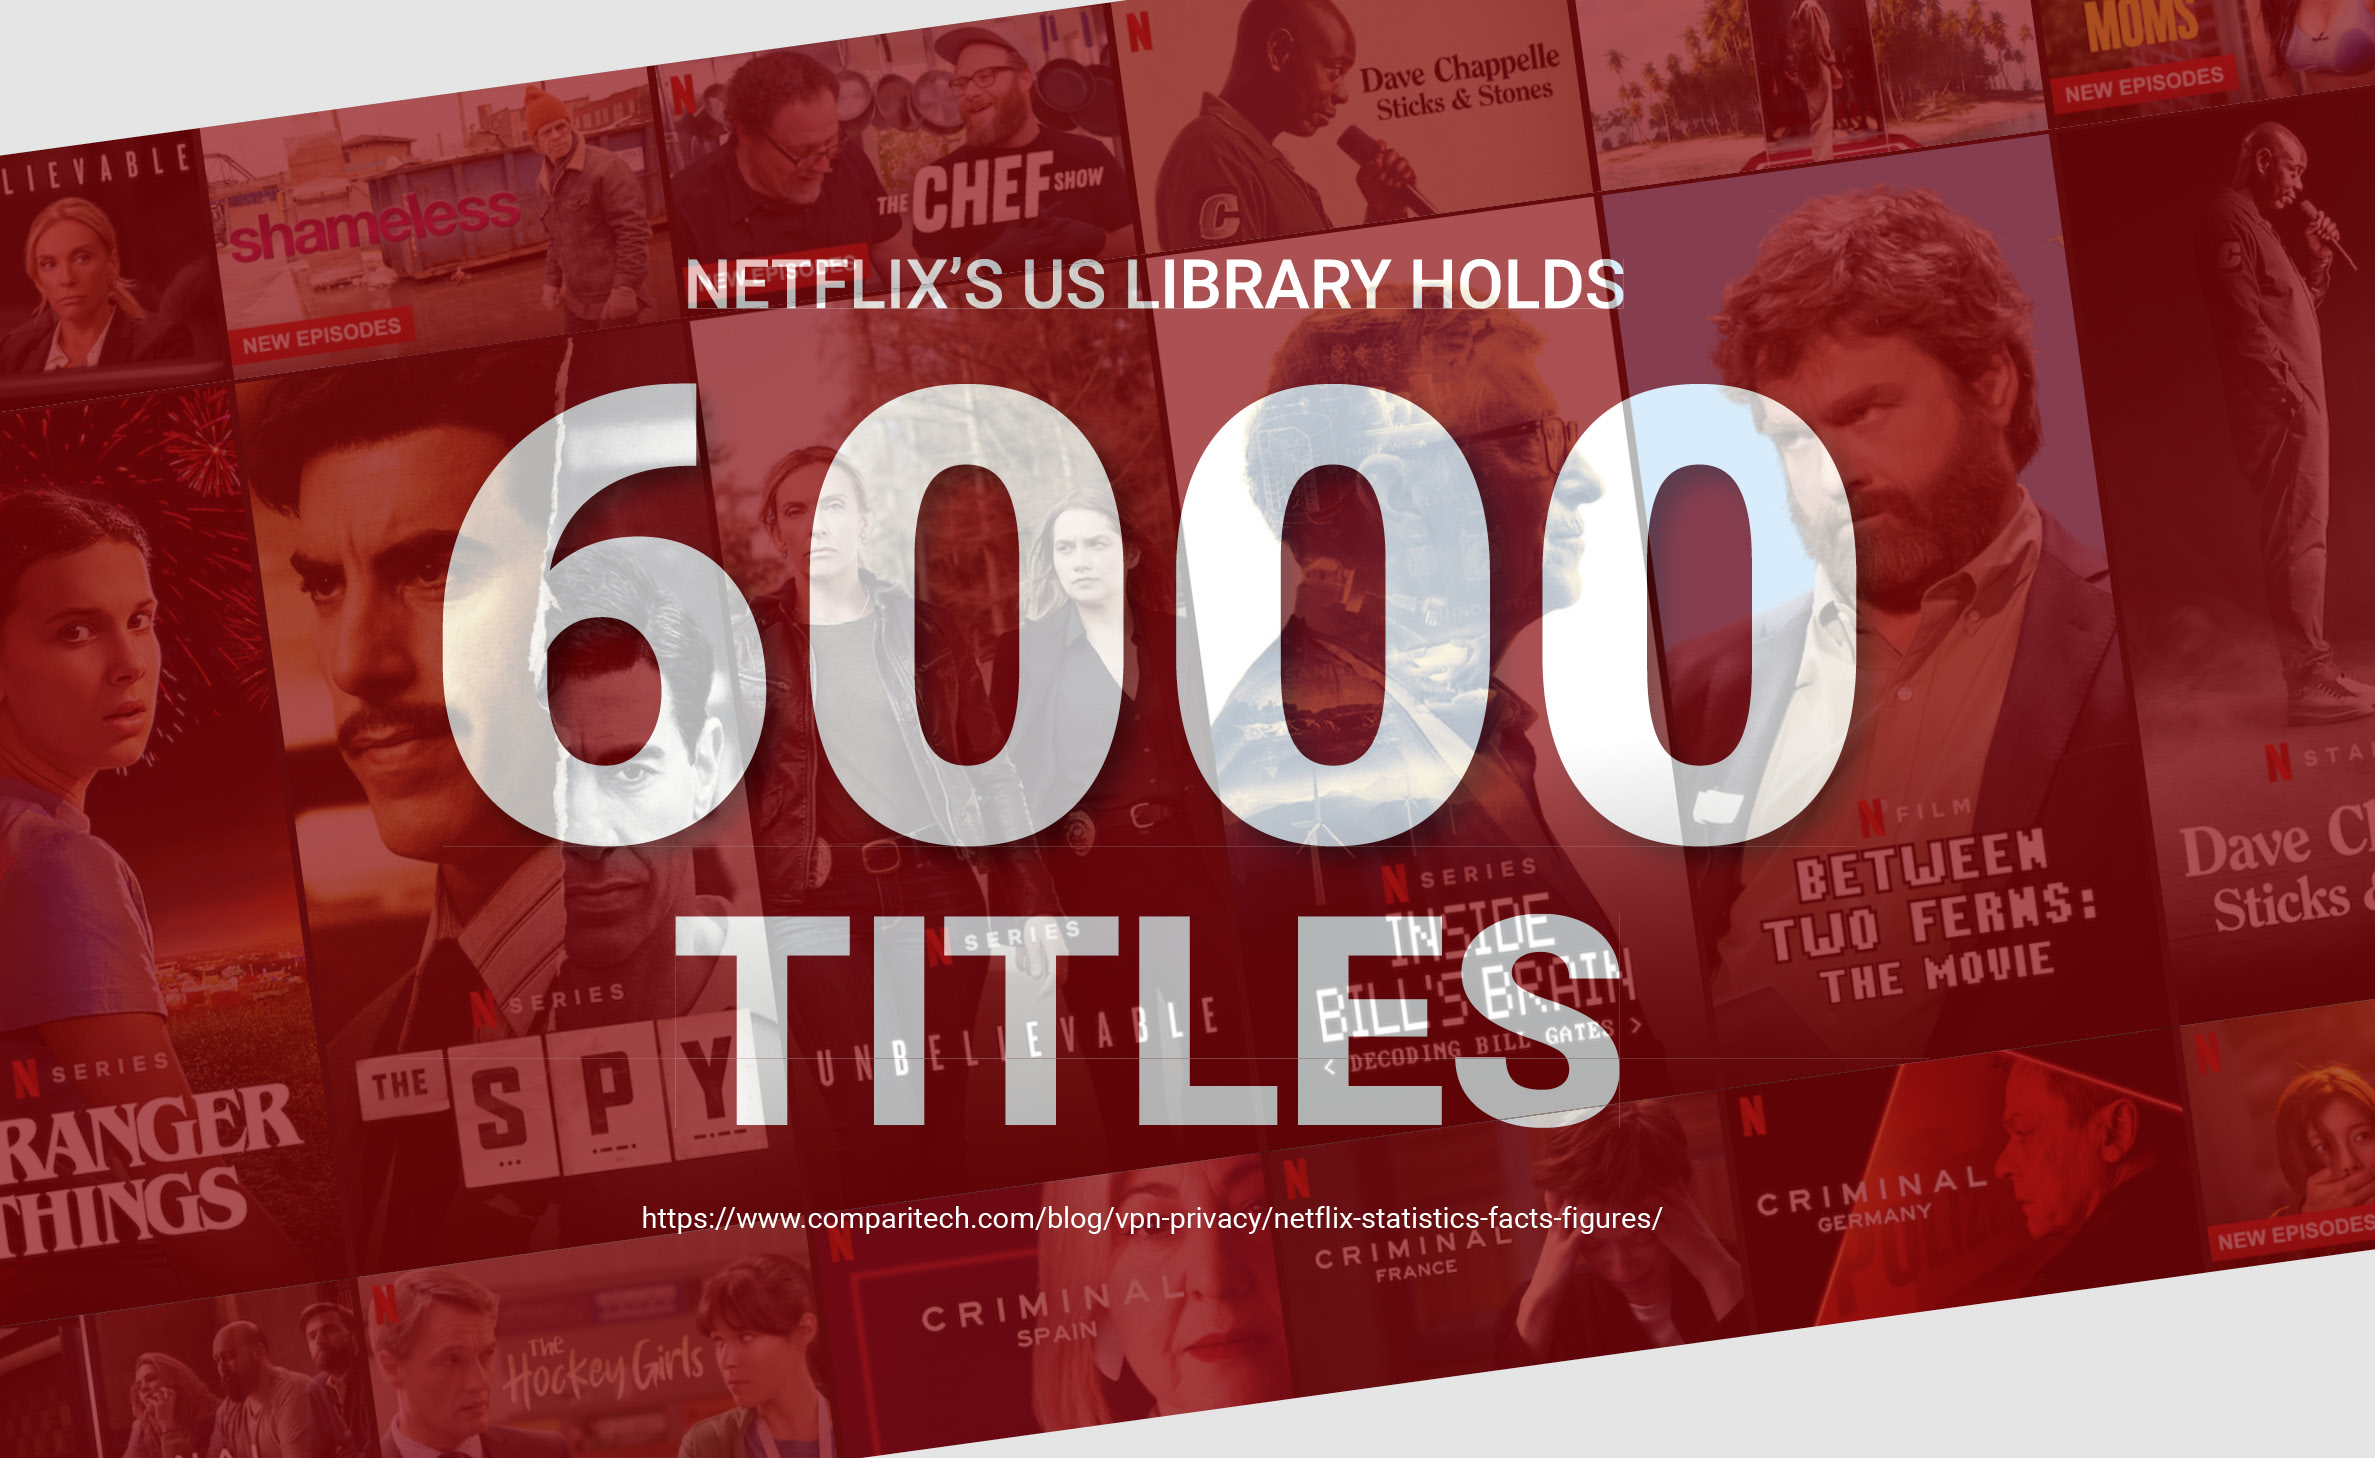 Netflix holds 6,000 Titles